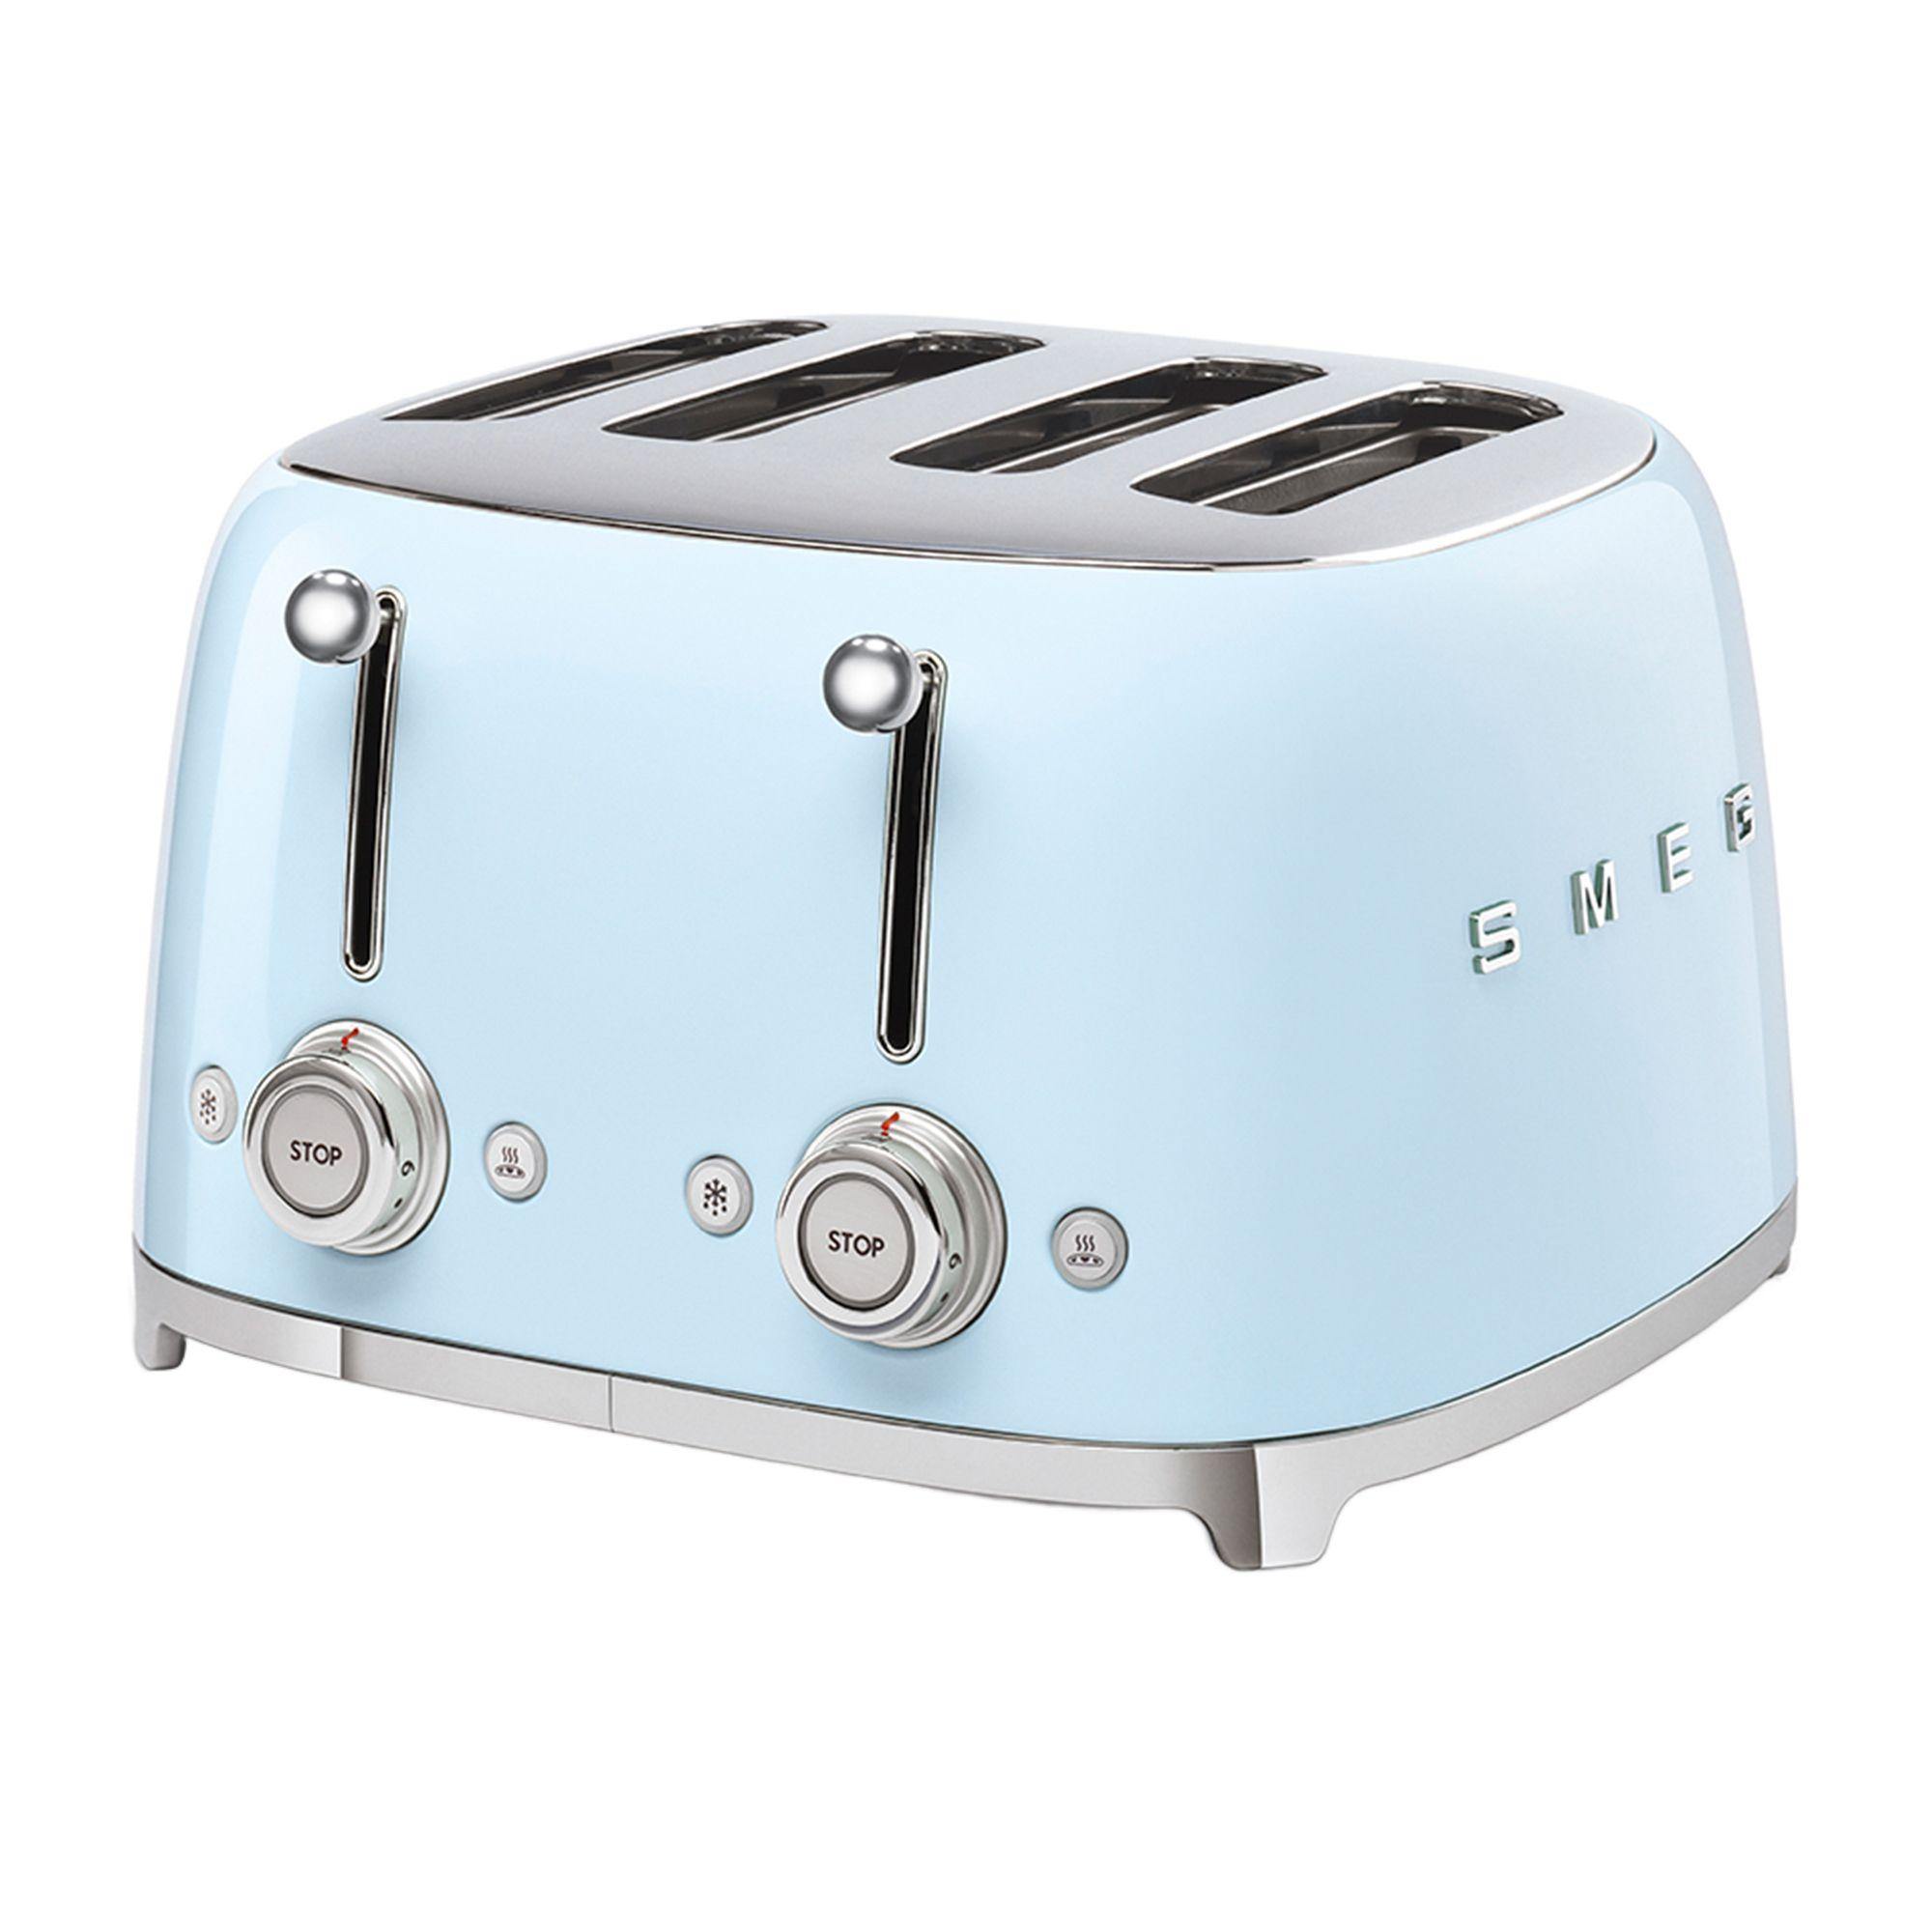 Smeg 50's Retro Style 4 Slot Toaster Pastel Blue Image 1